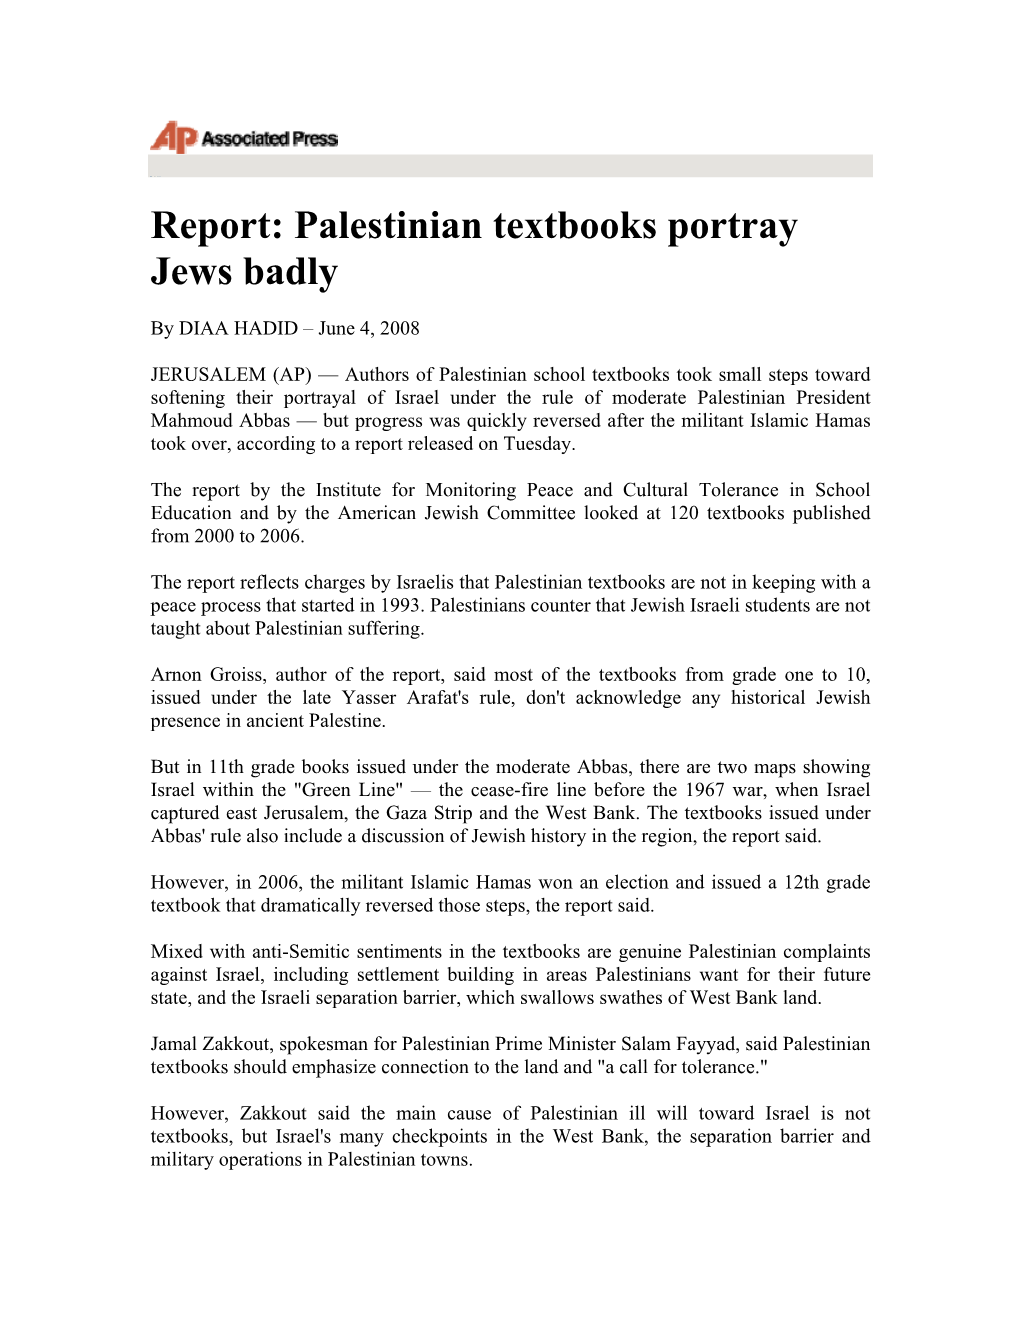 Palestinian Textbooks Portray Jews Badly